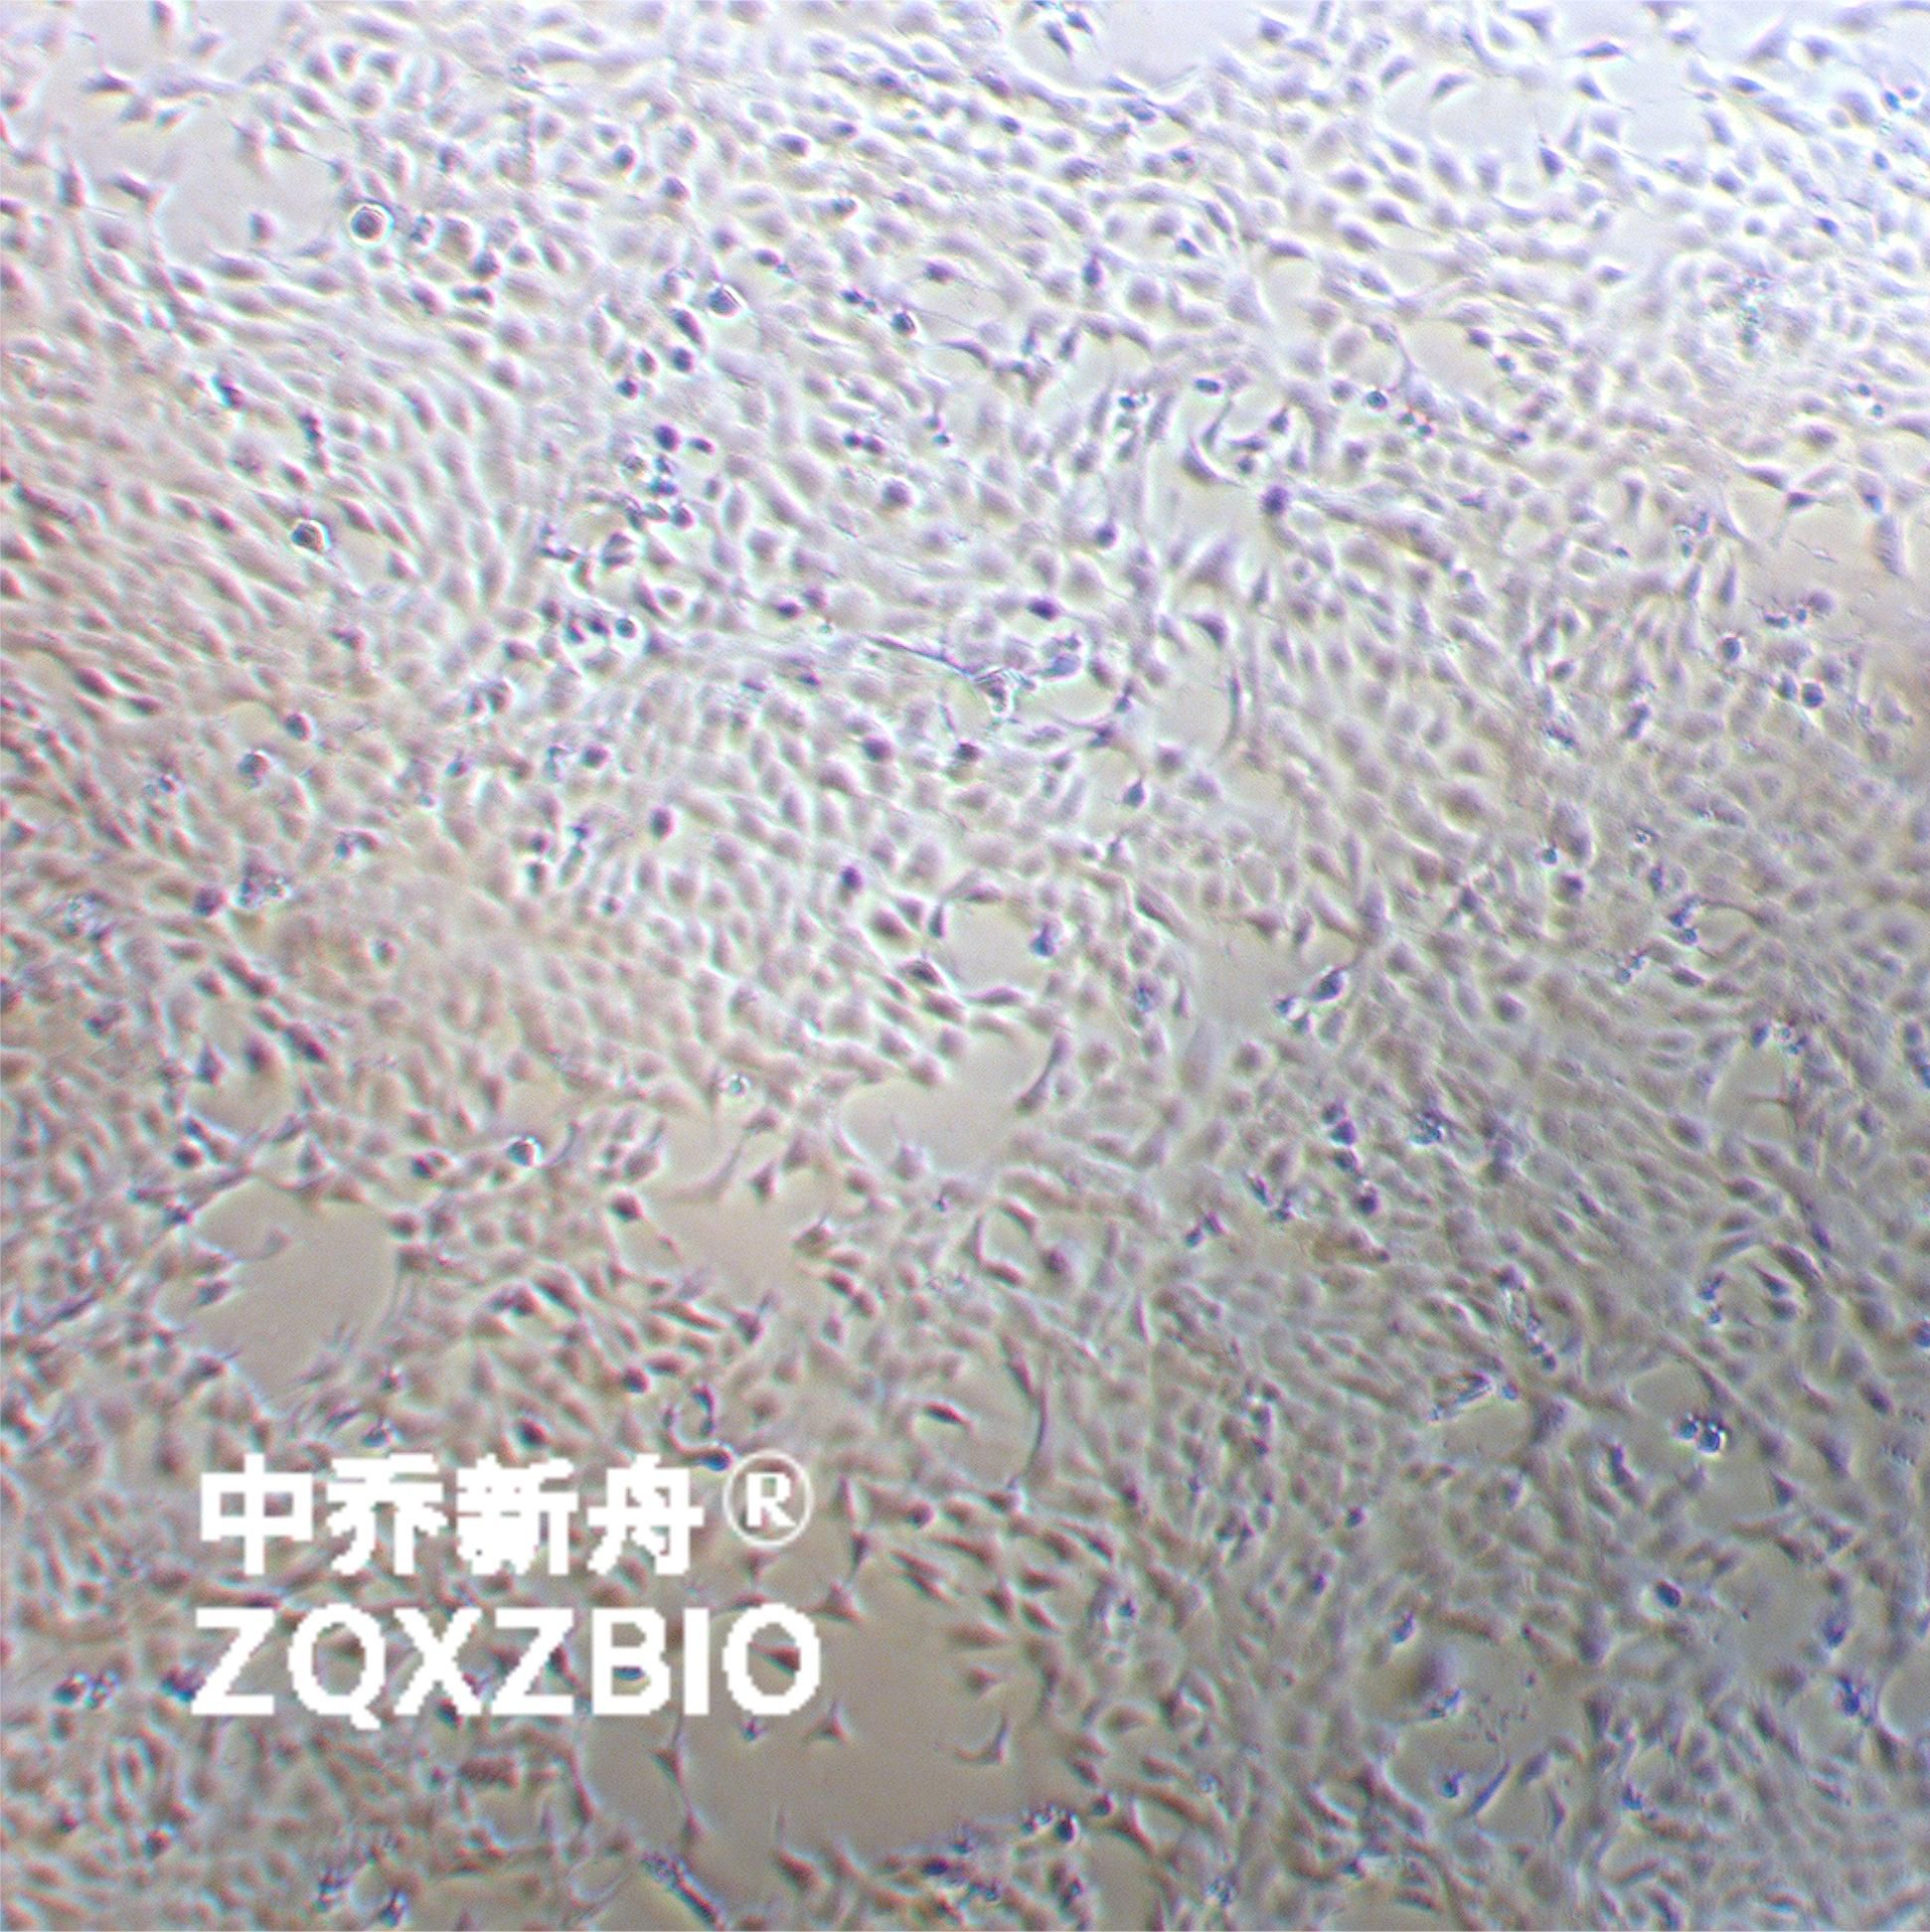 4T1小鼠乳腺癌细胞